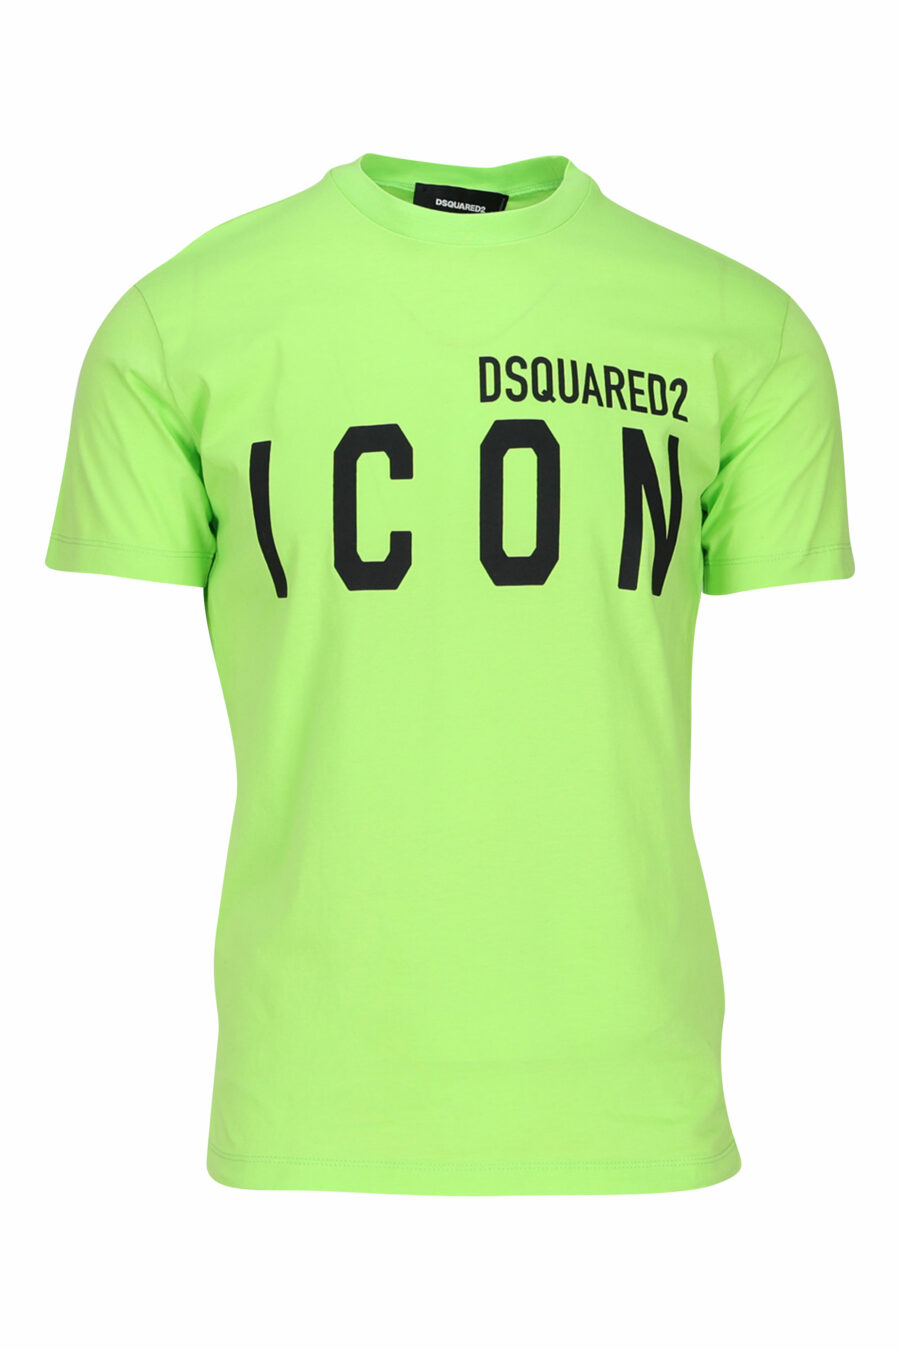 T-shirt vert citron avec maxilogo "icon" noir - 8054148035594